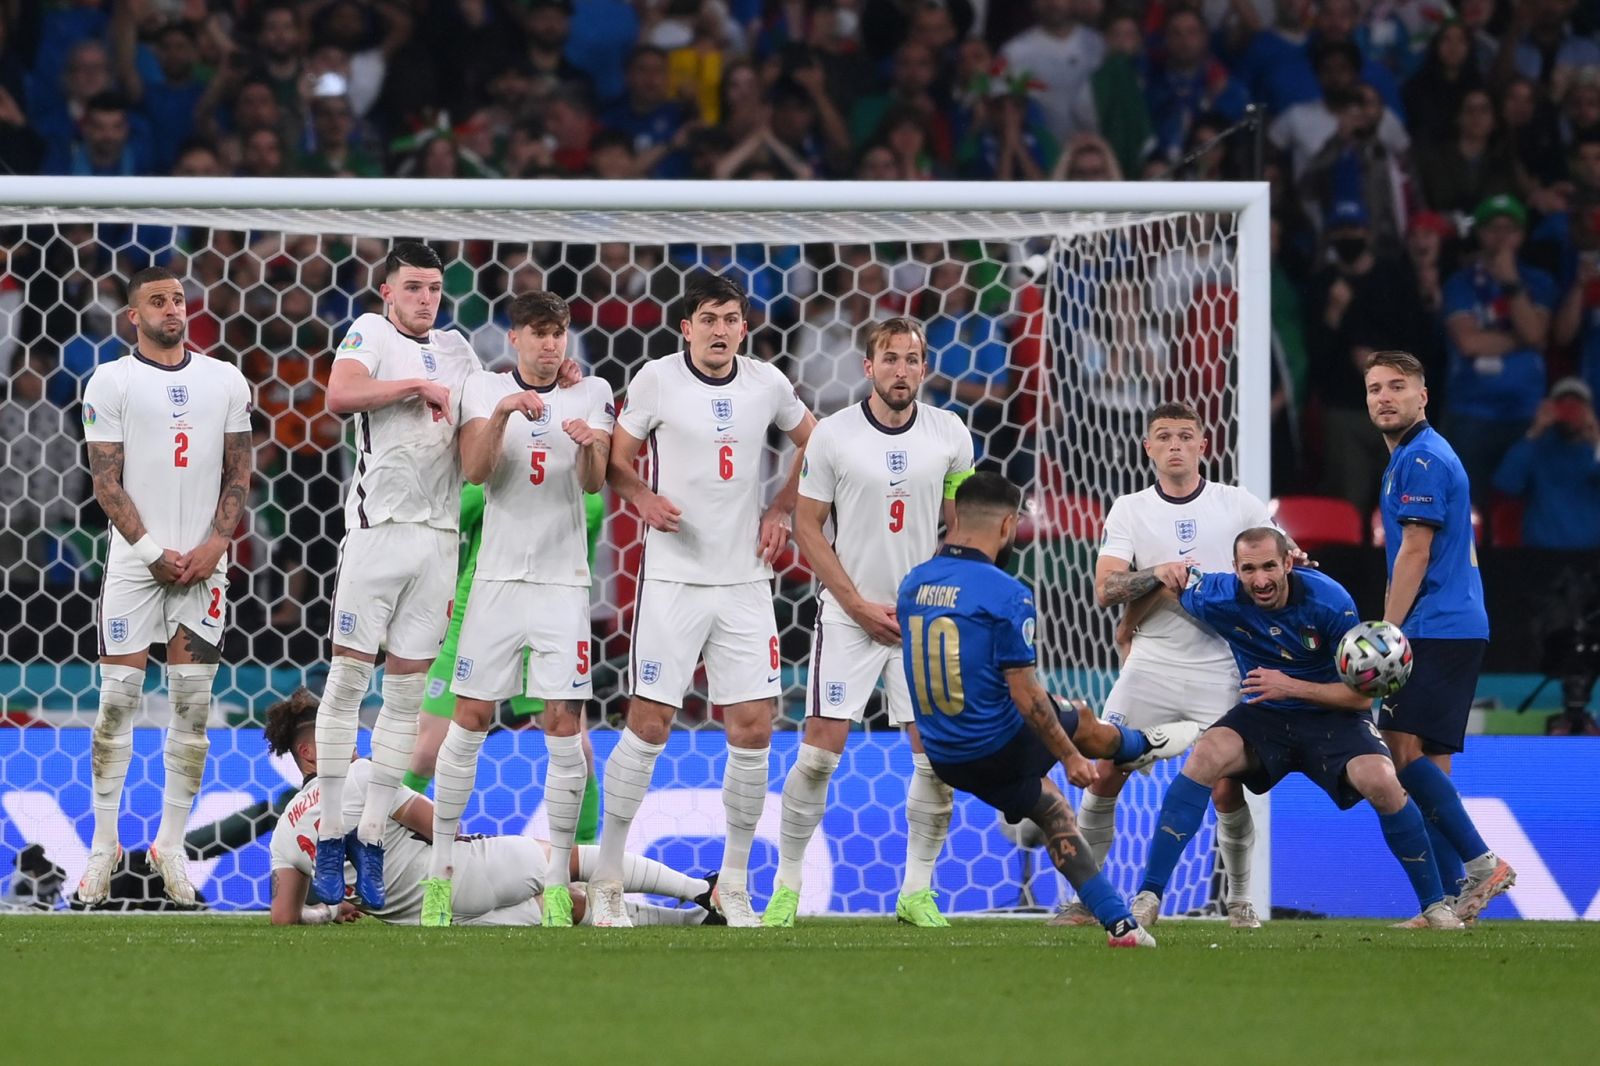 Италия остановила Англию в сумасшедшей серии пенальти, фото — УЕФА